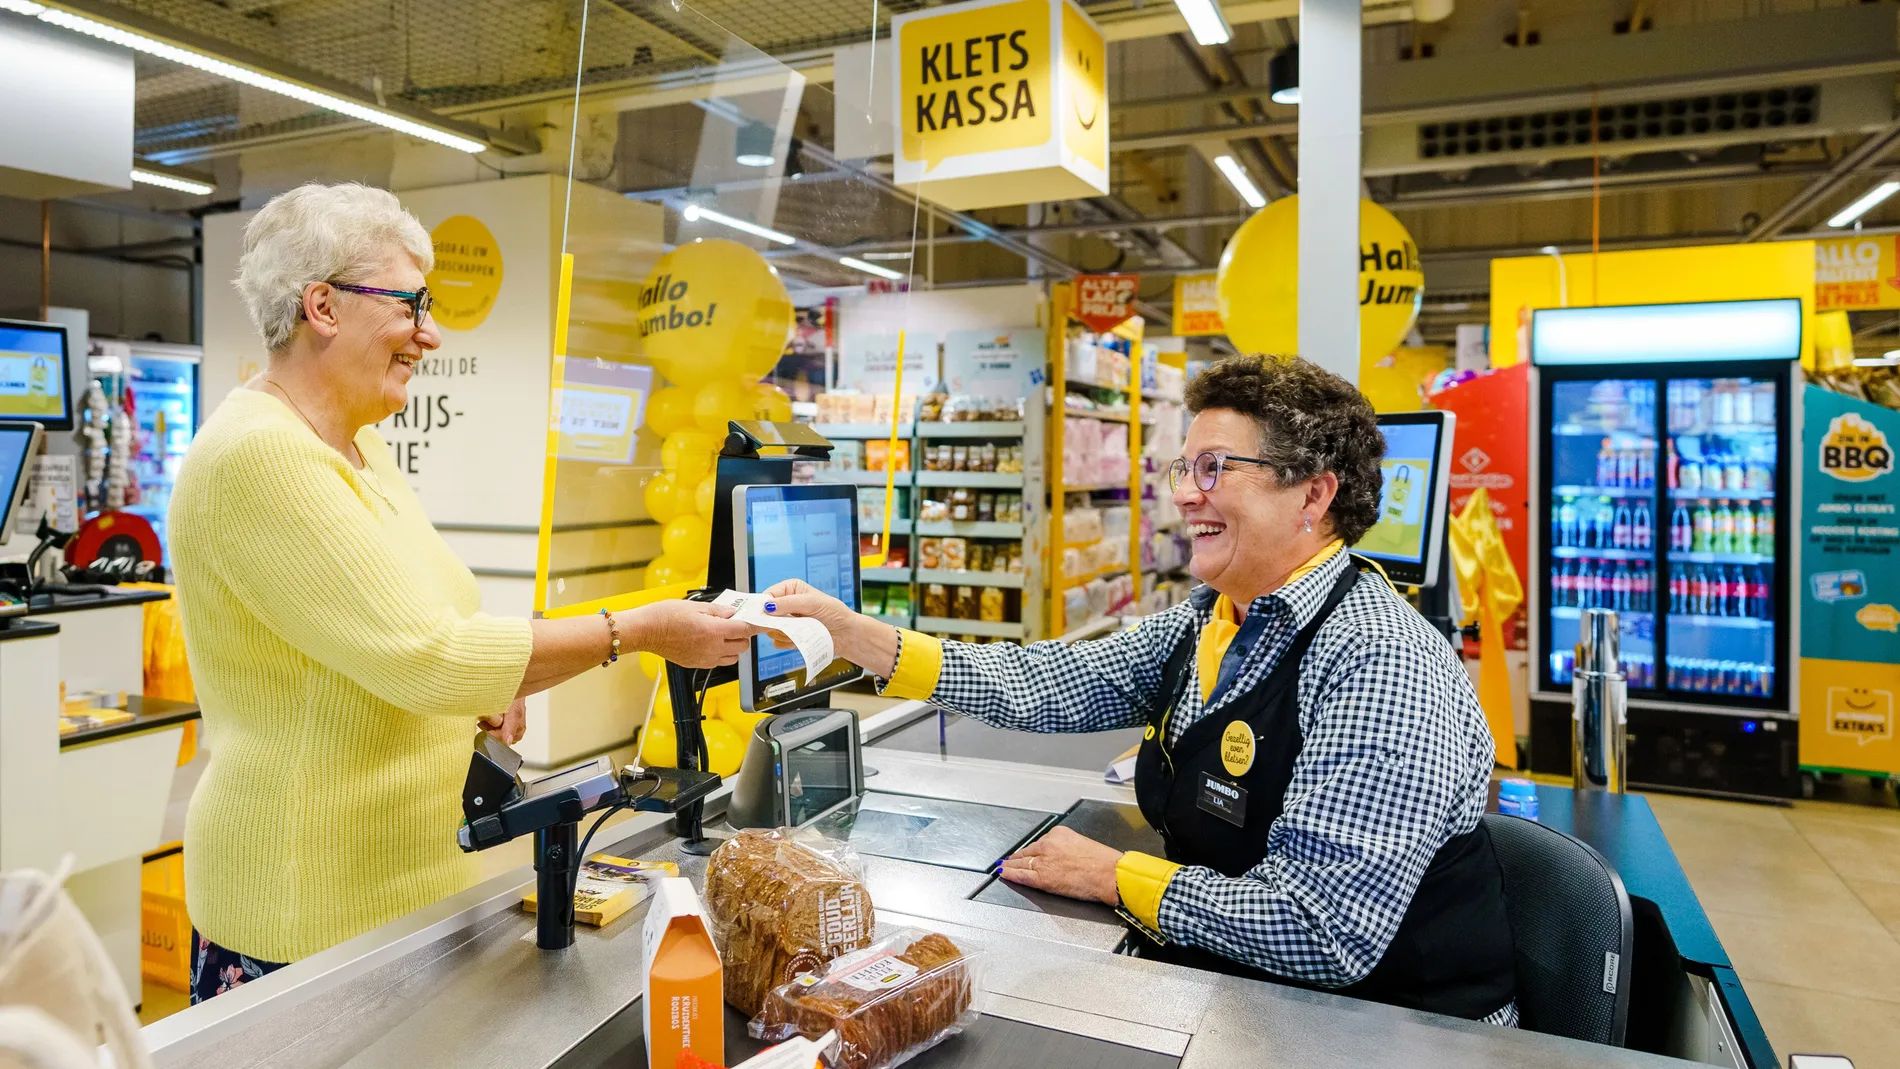 Cajas lentas para charlar, la iniciativa de un supermercado de Holanda para gente mayor con ganas de hablar